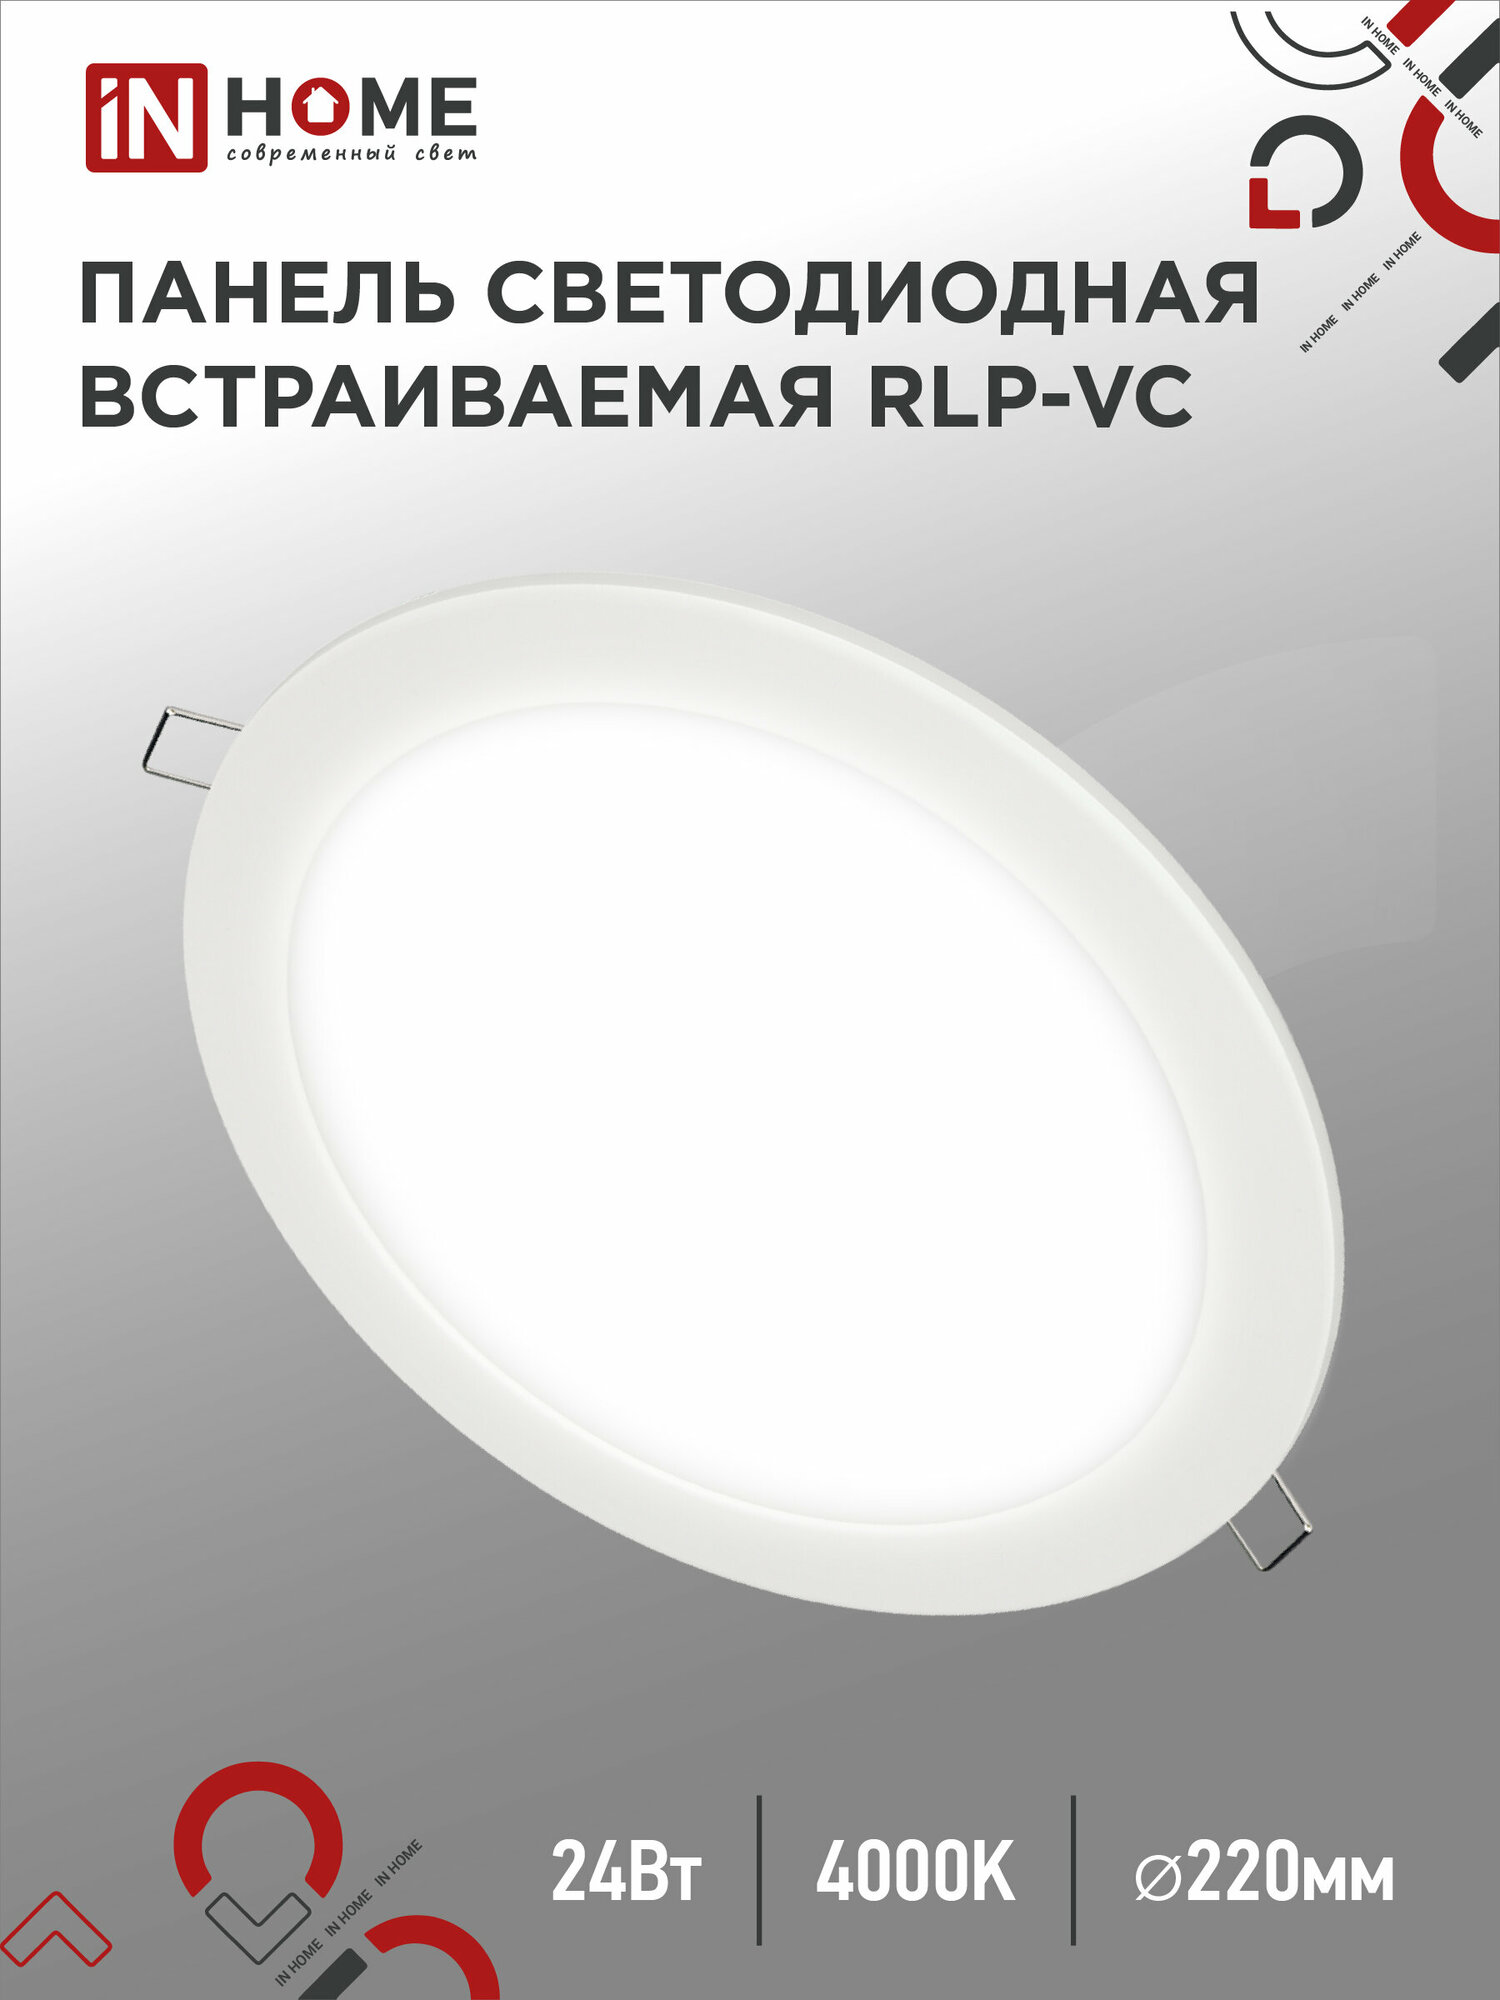 Панель светодиодная встраиваемая круглая RLP-VC 24Вт 230В 4000К 1920Лм 220мм белая IP40 IN HOME